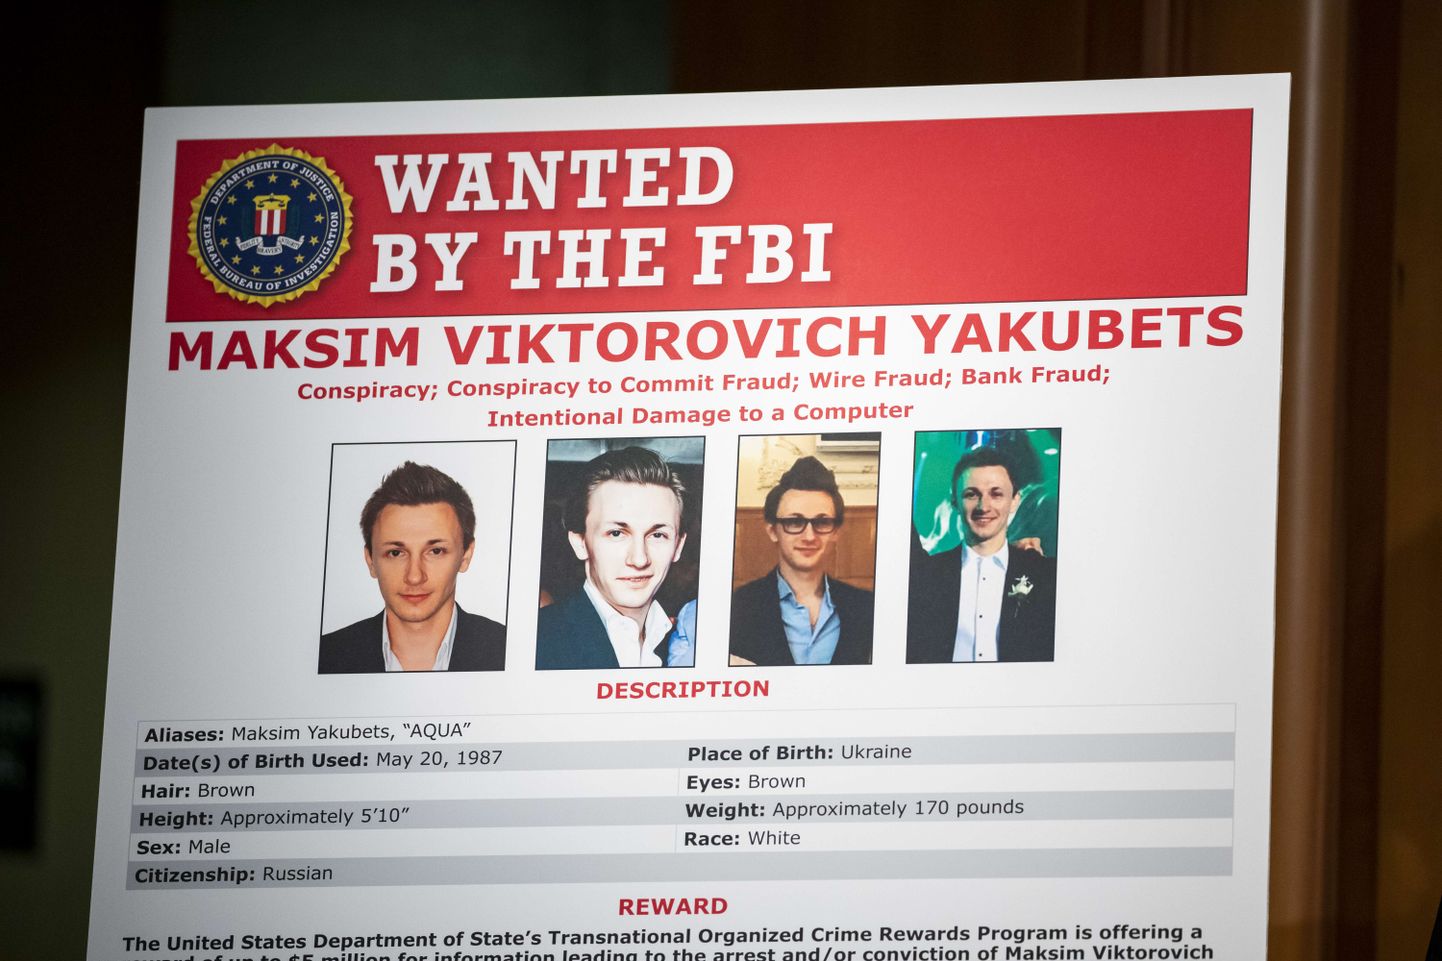 Максим Якубец заочно арестован в США, за информацию, которая приведет его к аресту, объявлено вознаграждение в 5 миллионов долларов.